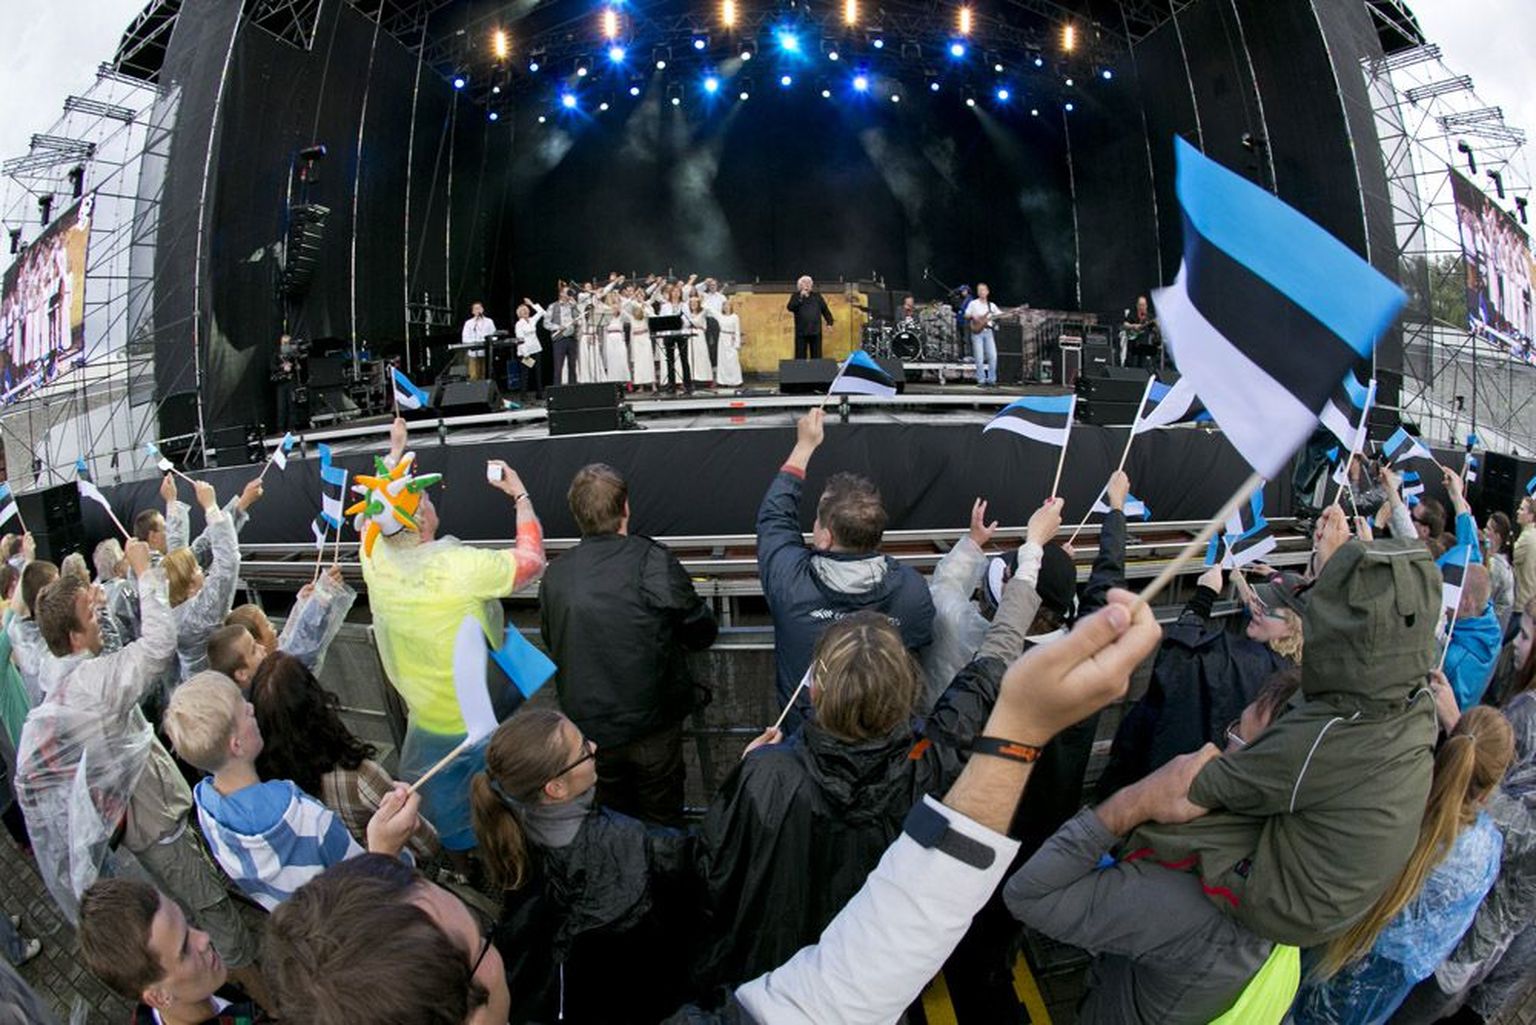 25 aasta eest oli Summeril publikut mitu korda rohkem, kuid pühapäeval Ivo Linna esinemise ajal lehvitati uhkelt Eesti lippe.